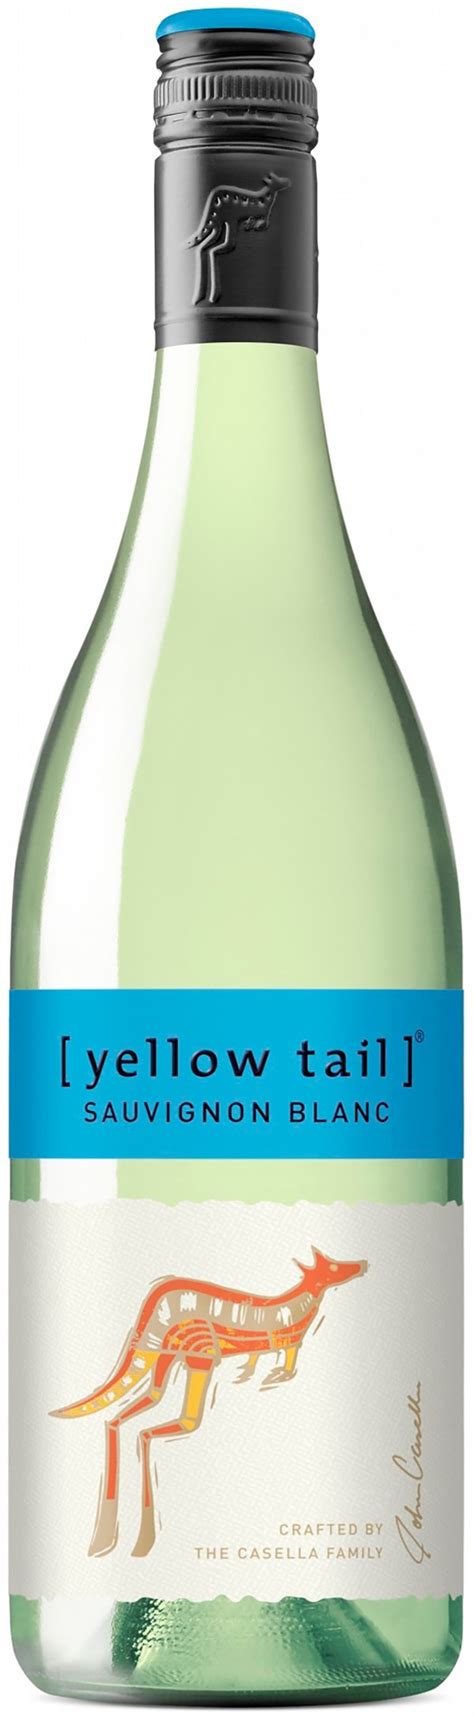 Yellow Tail Sauvignon Blanc logo